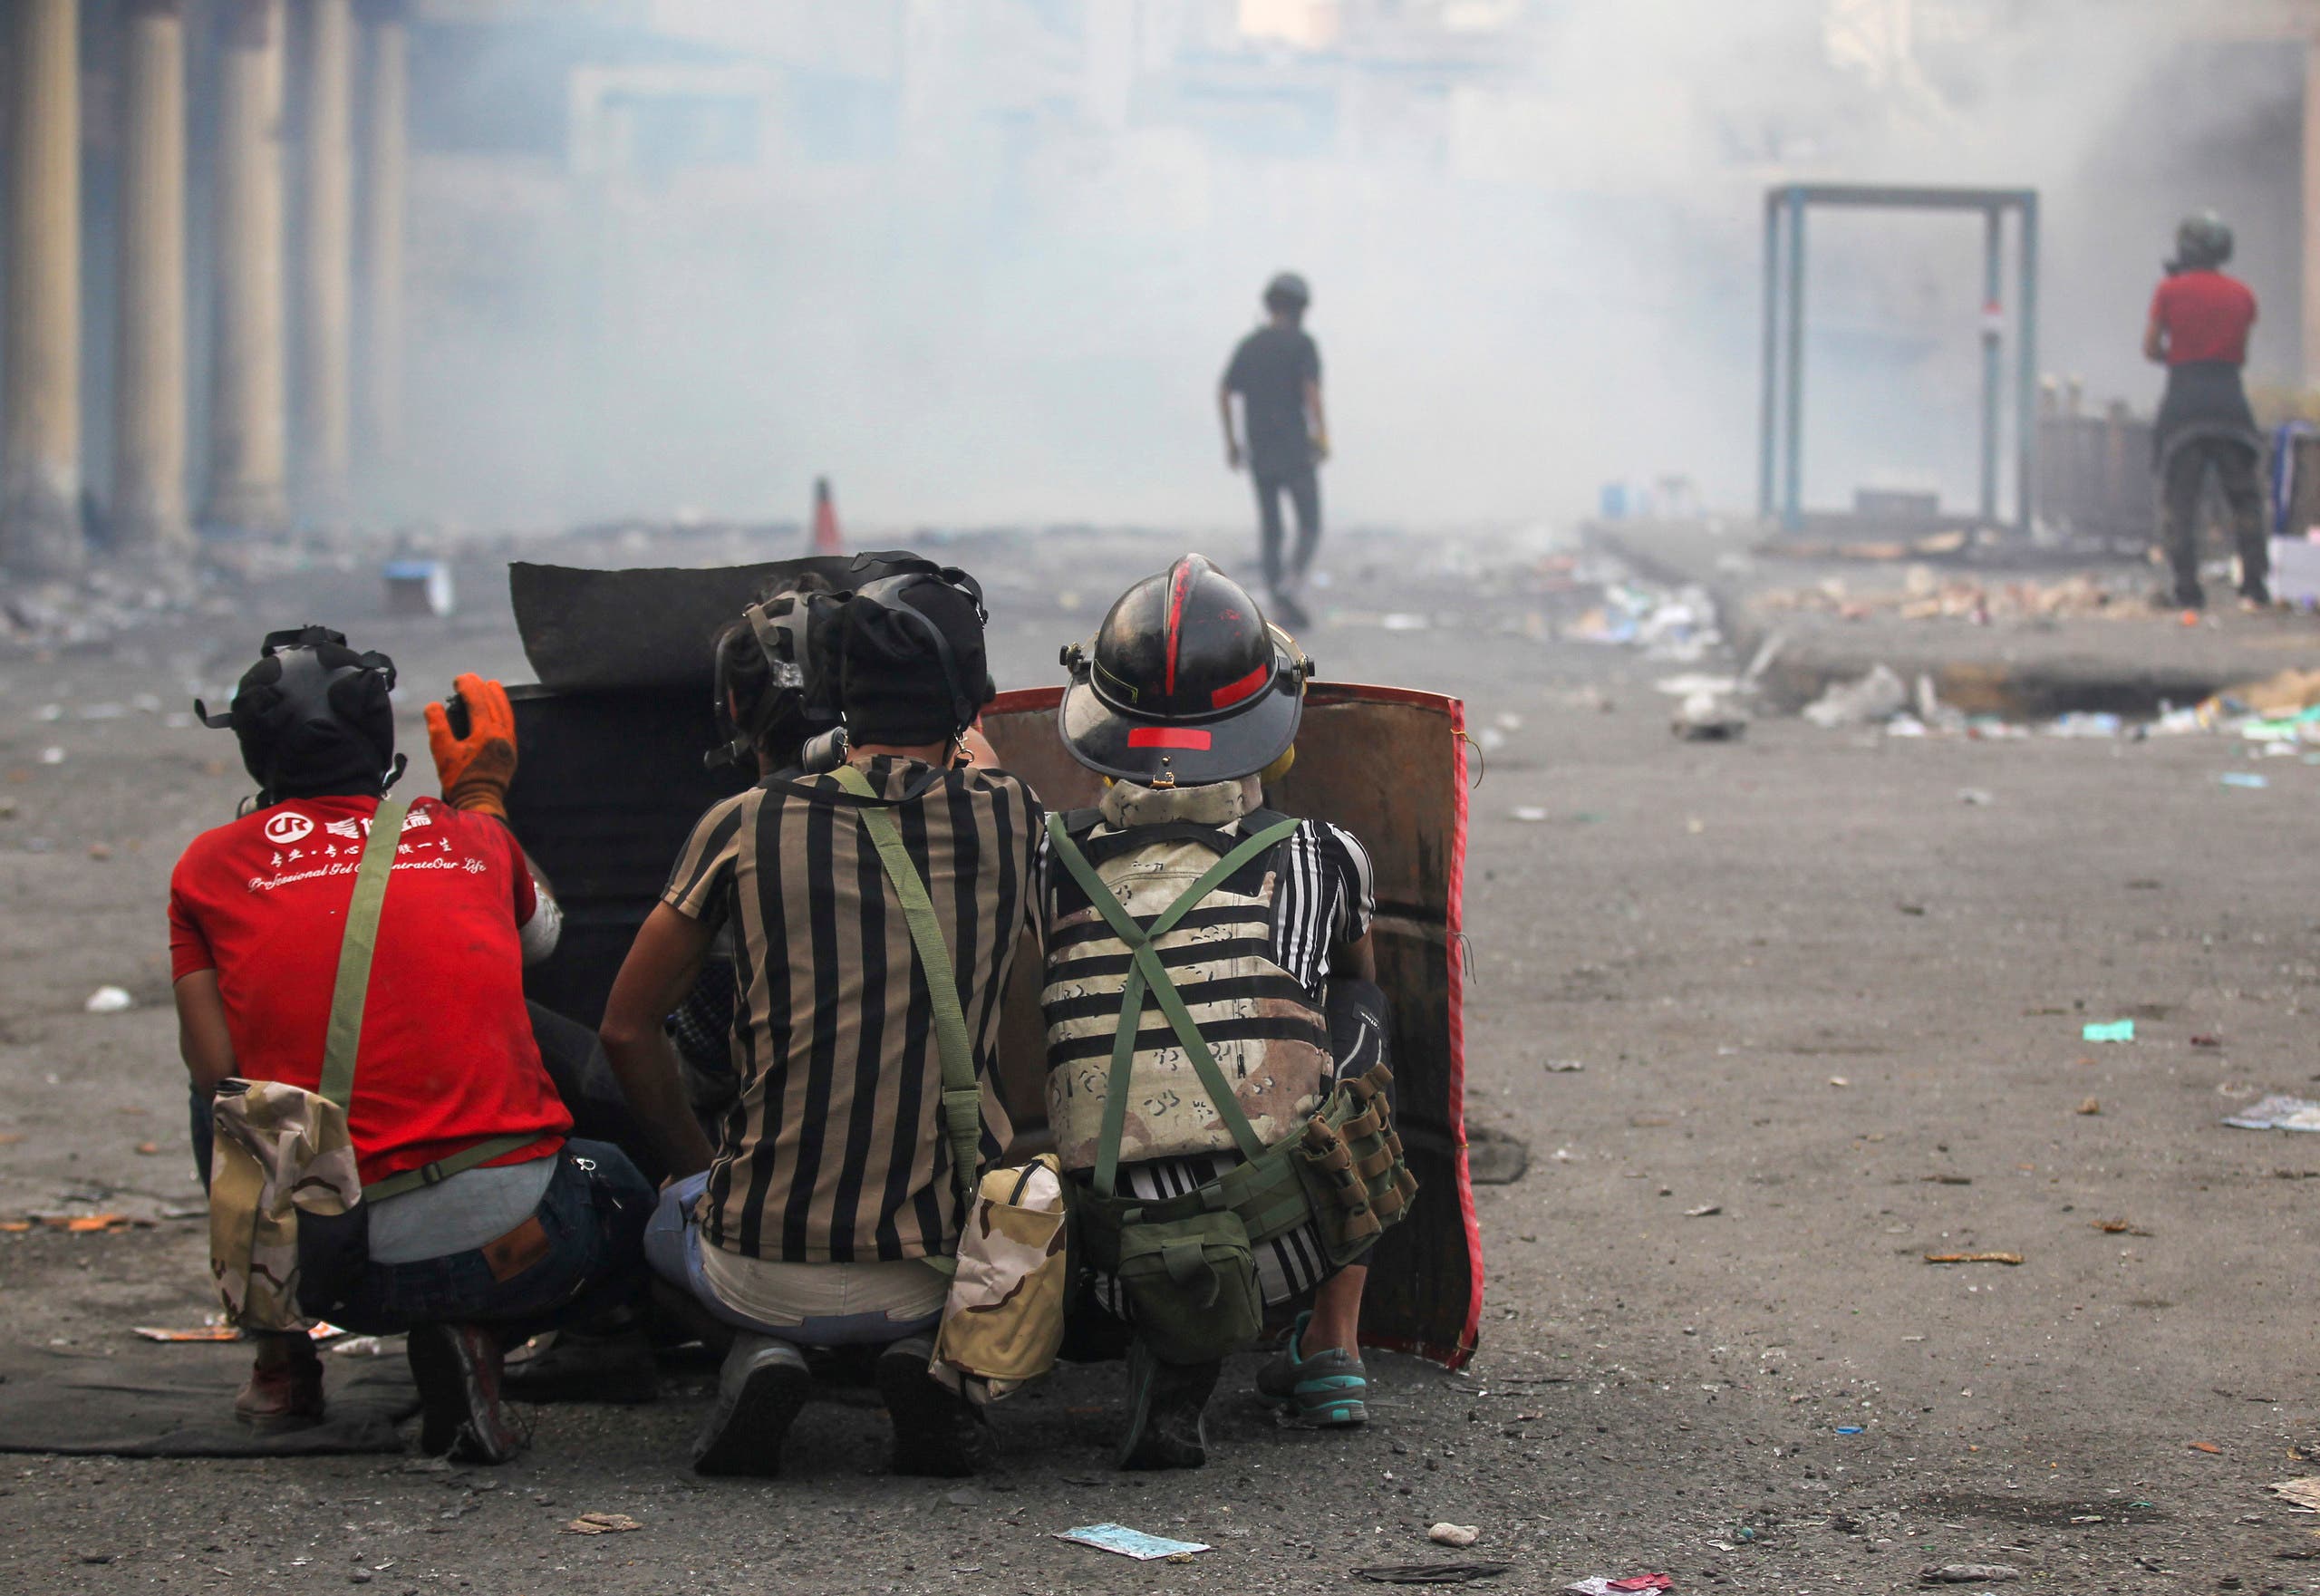 اصابات واختناقات بصدامات بين محتجين وقوات امنية بعدة مدن عراقية